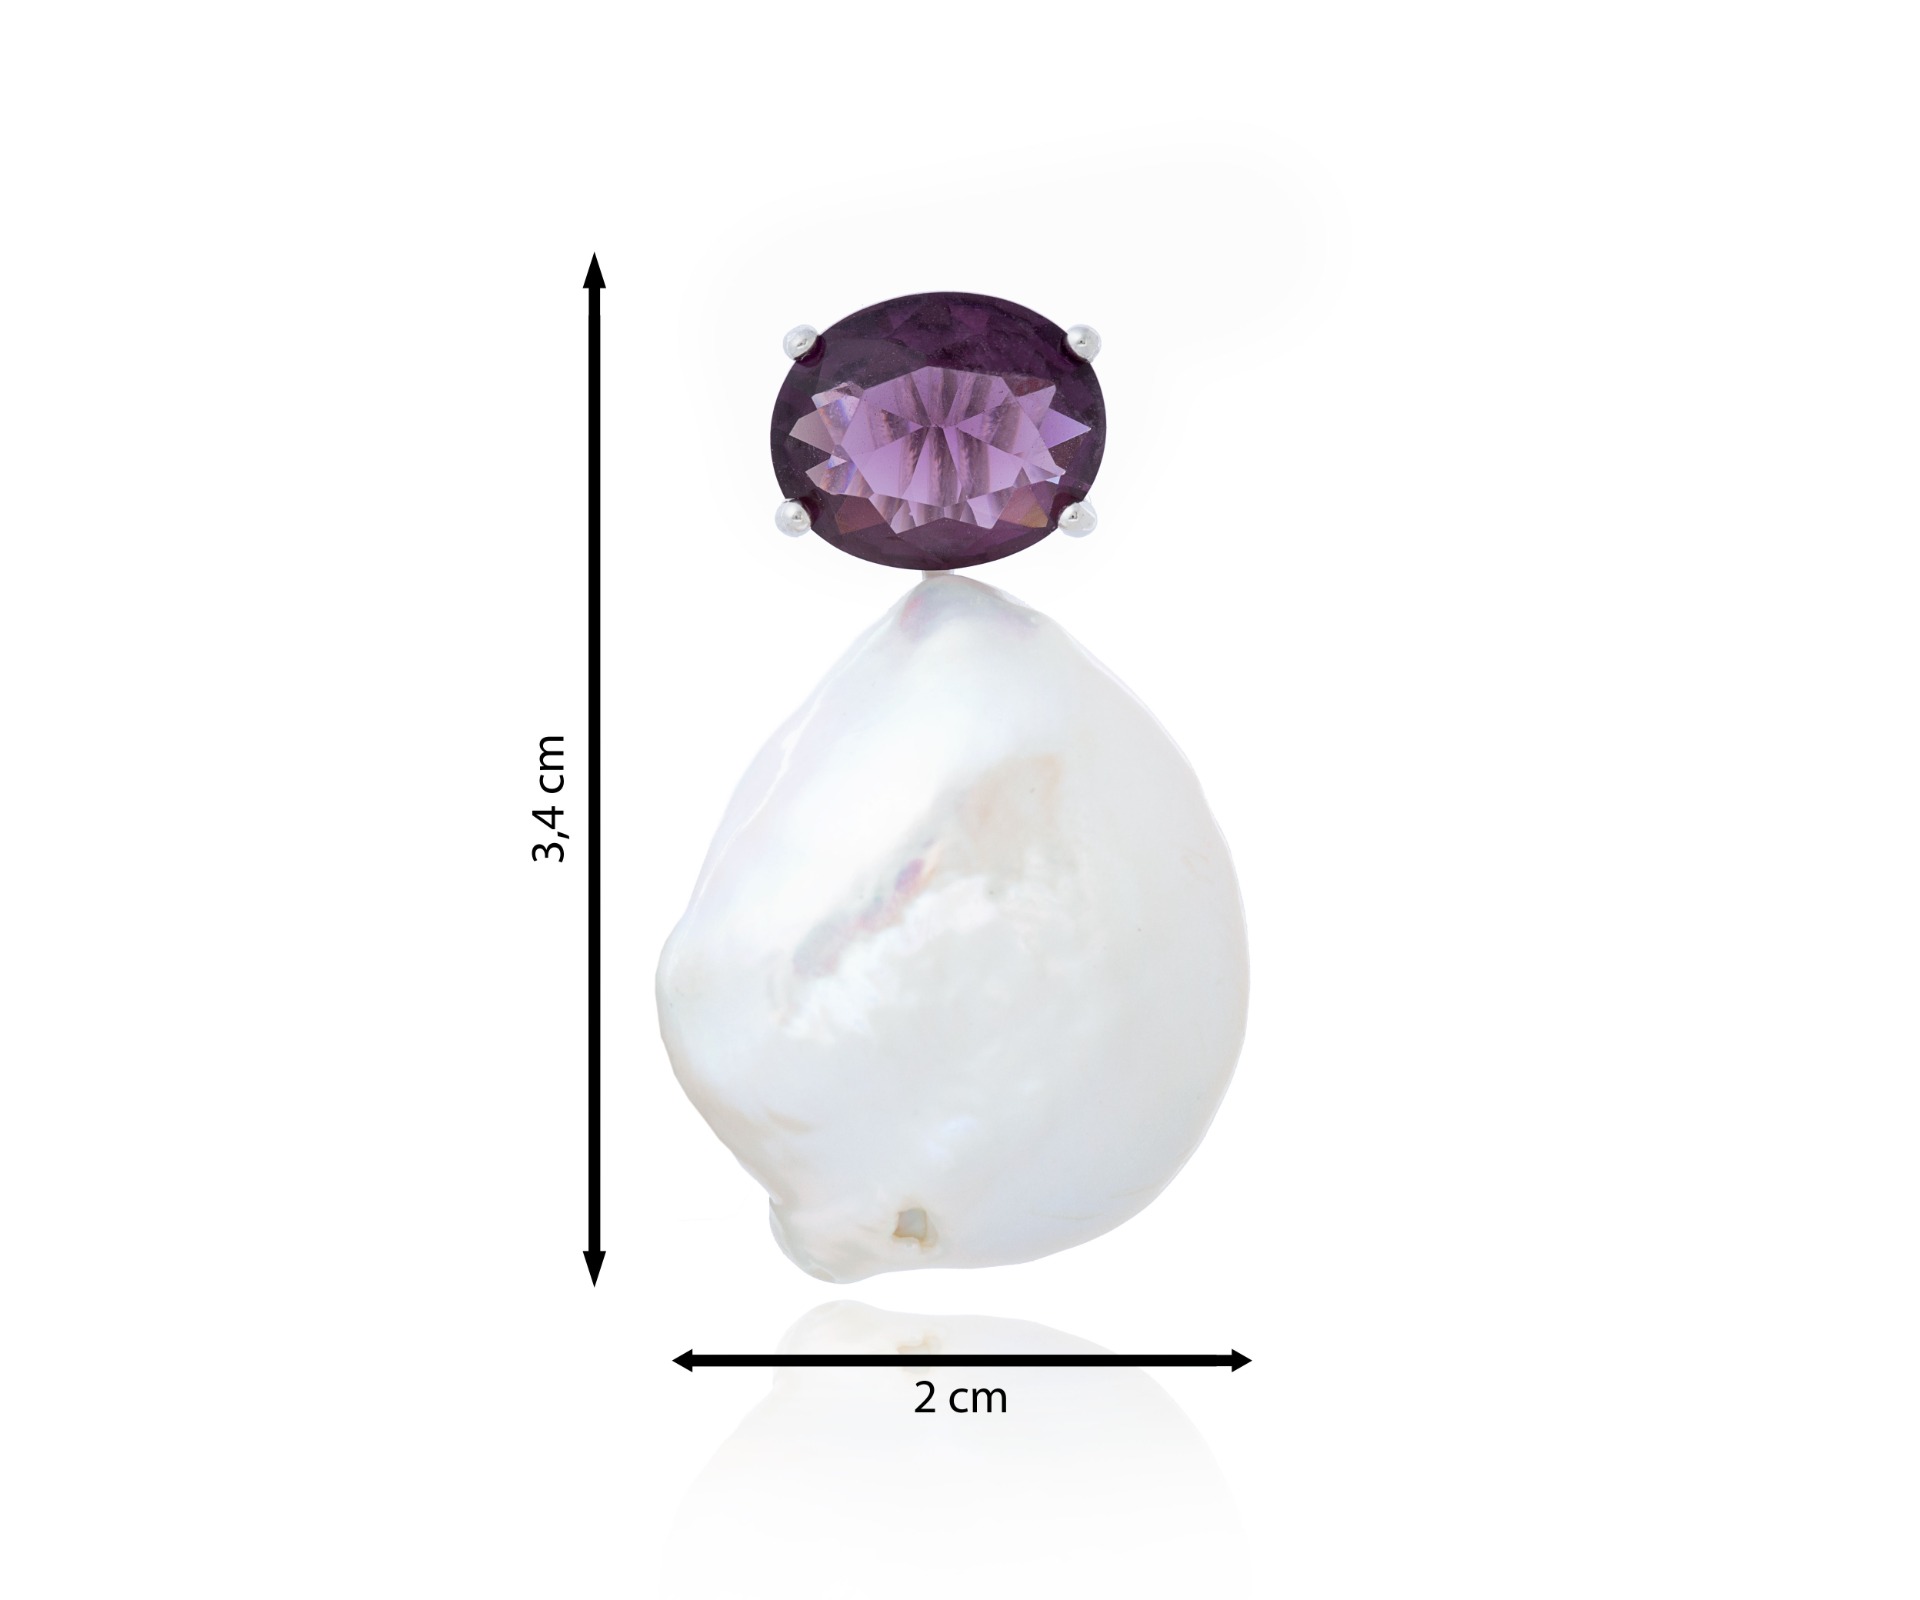 Colgante de perla barroca y circonita color violeta